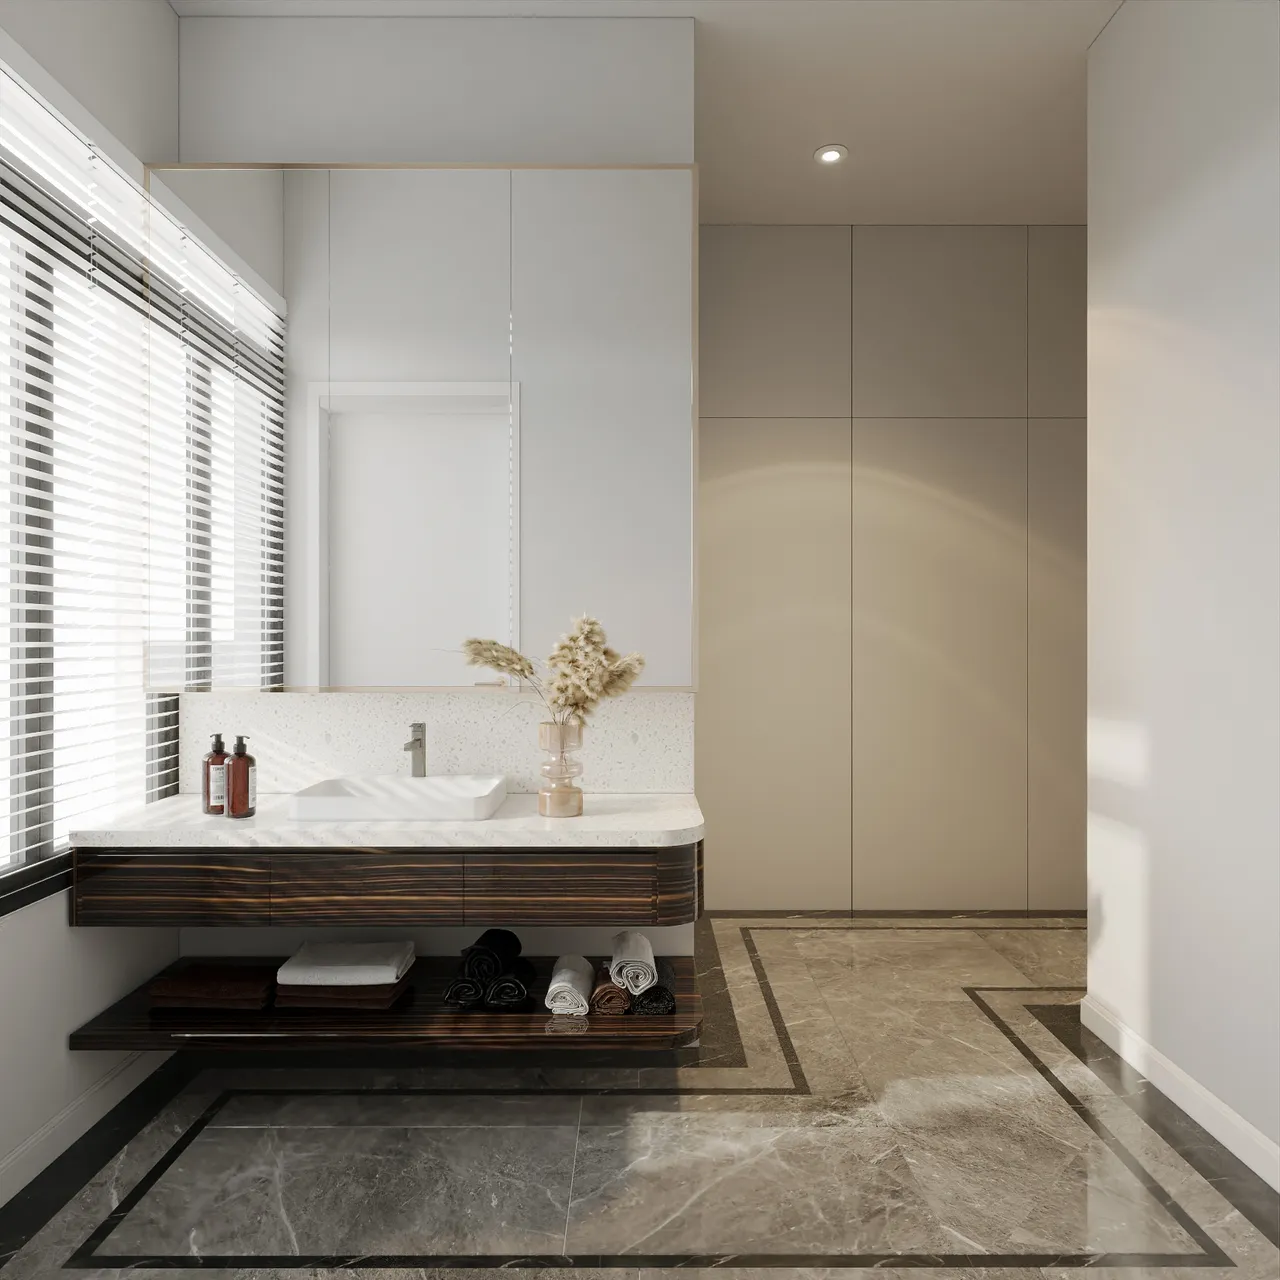 Concept nội thất nhà vệ sinh ở khu vực phòng sinh hoạt chung Biệt thự Đồng Nai phong cách Hiện đại Modern